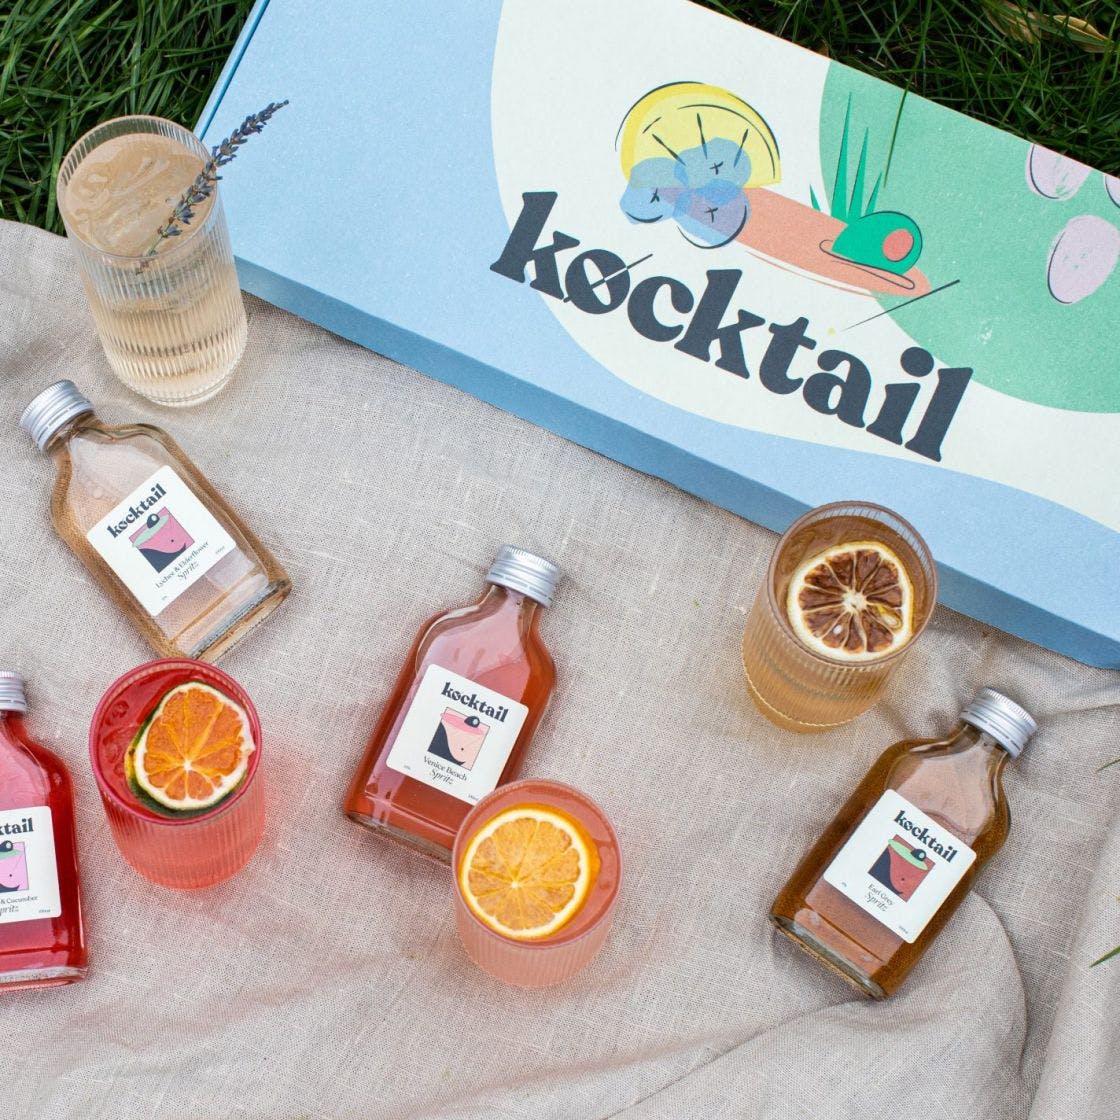 kocktail-summer-spritz-box-29-2-1120x1120